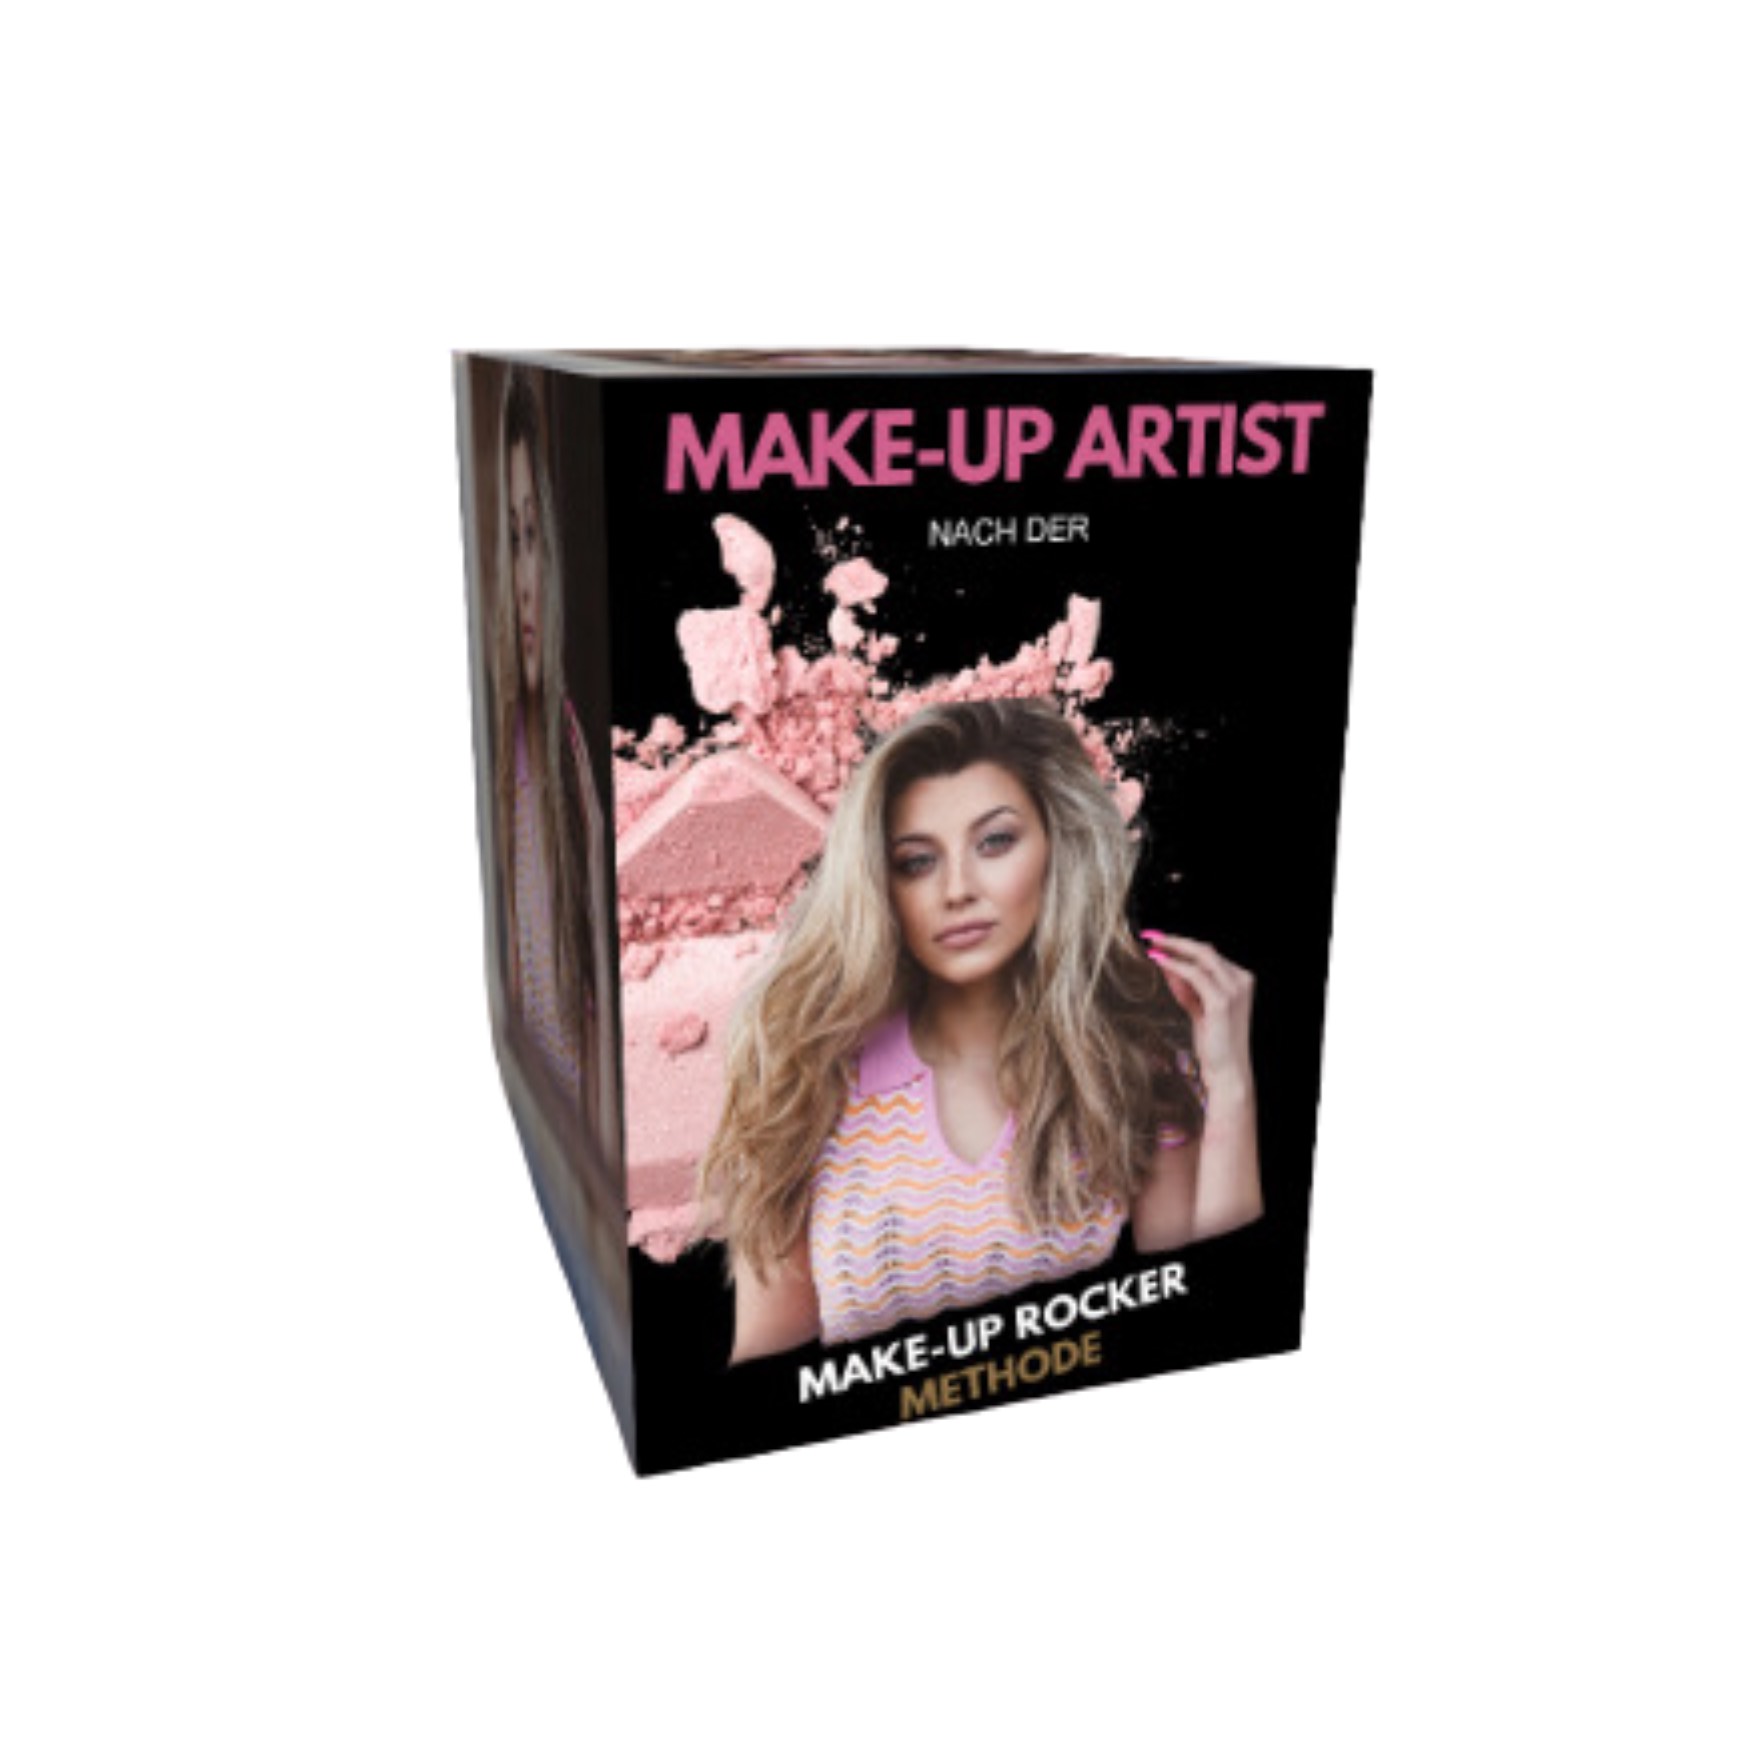 Make up Artist nach der Make up Rocker Methode